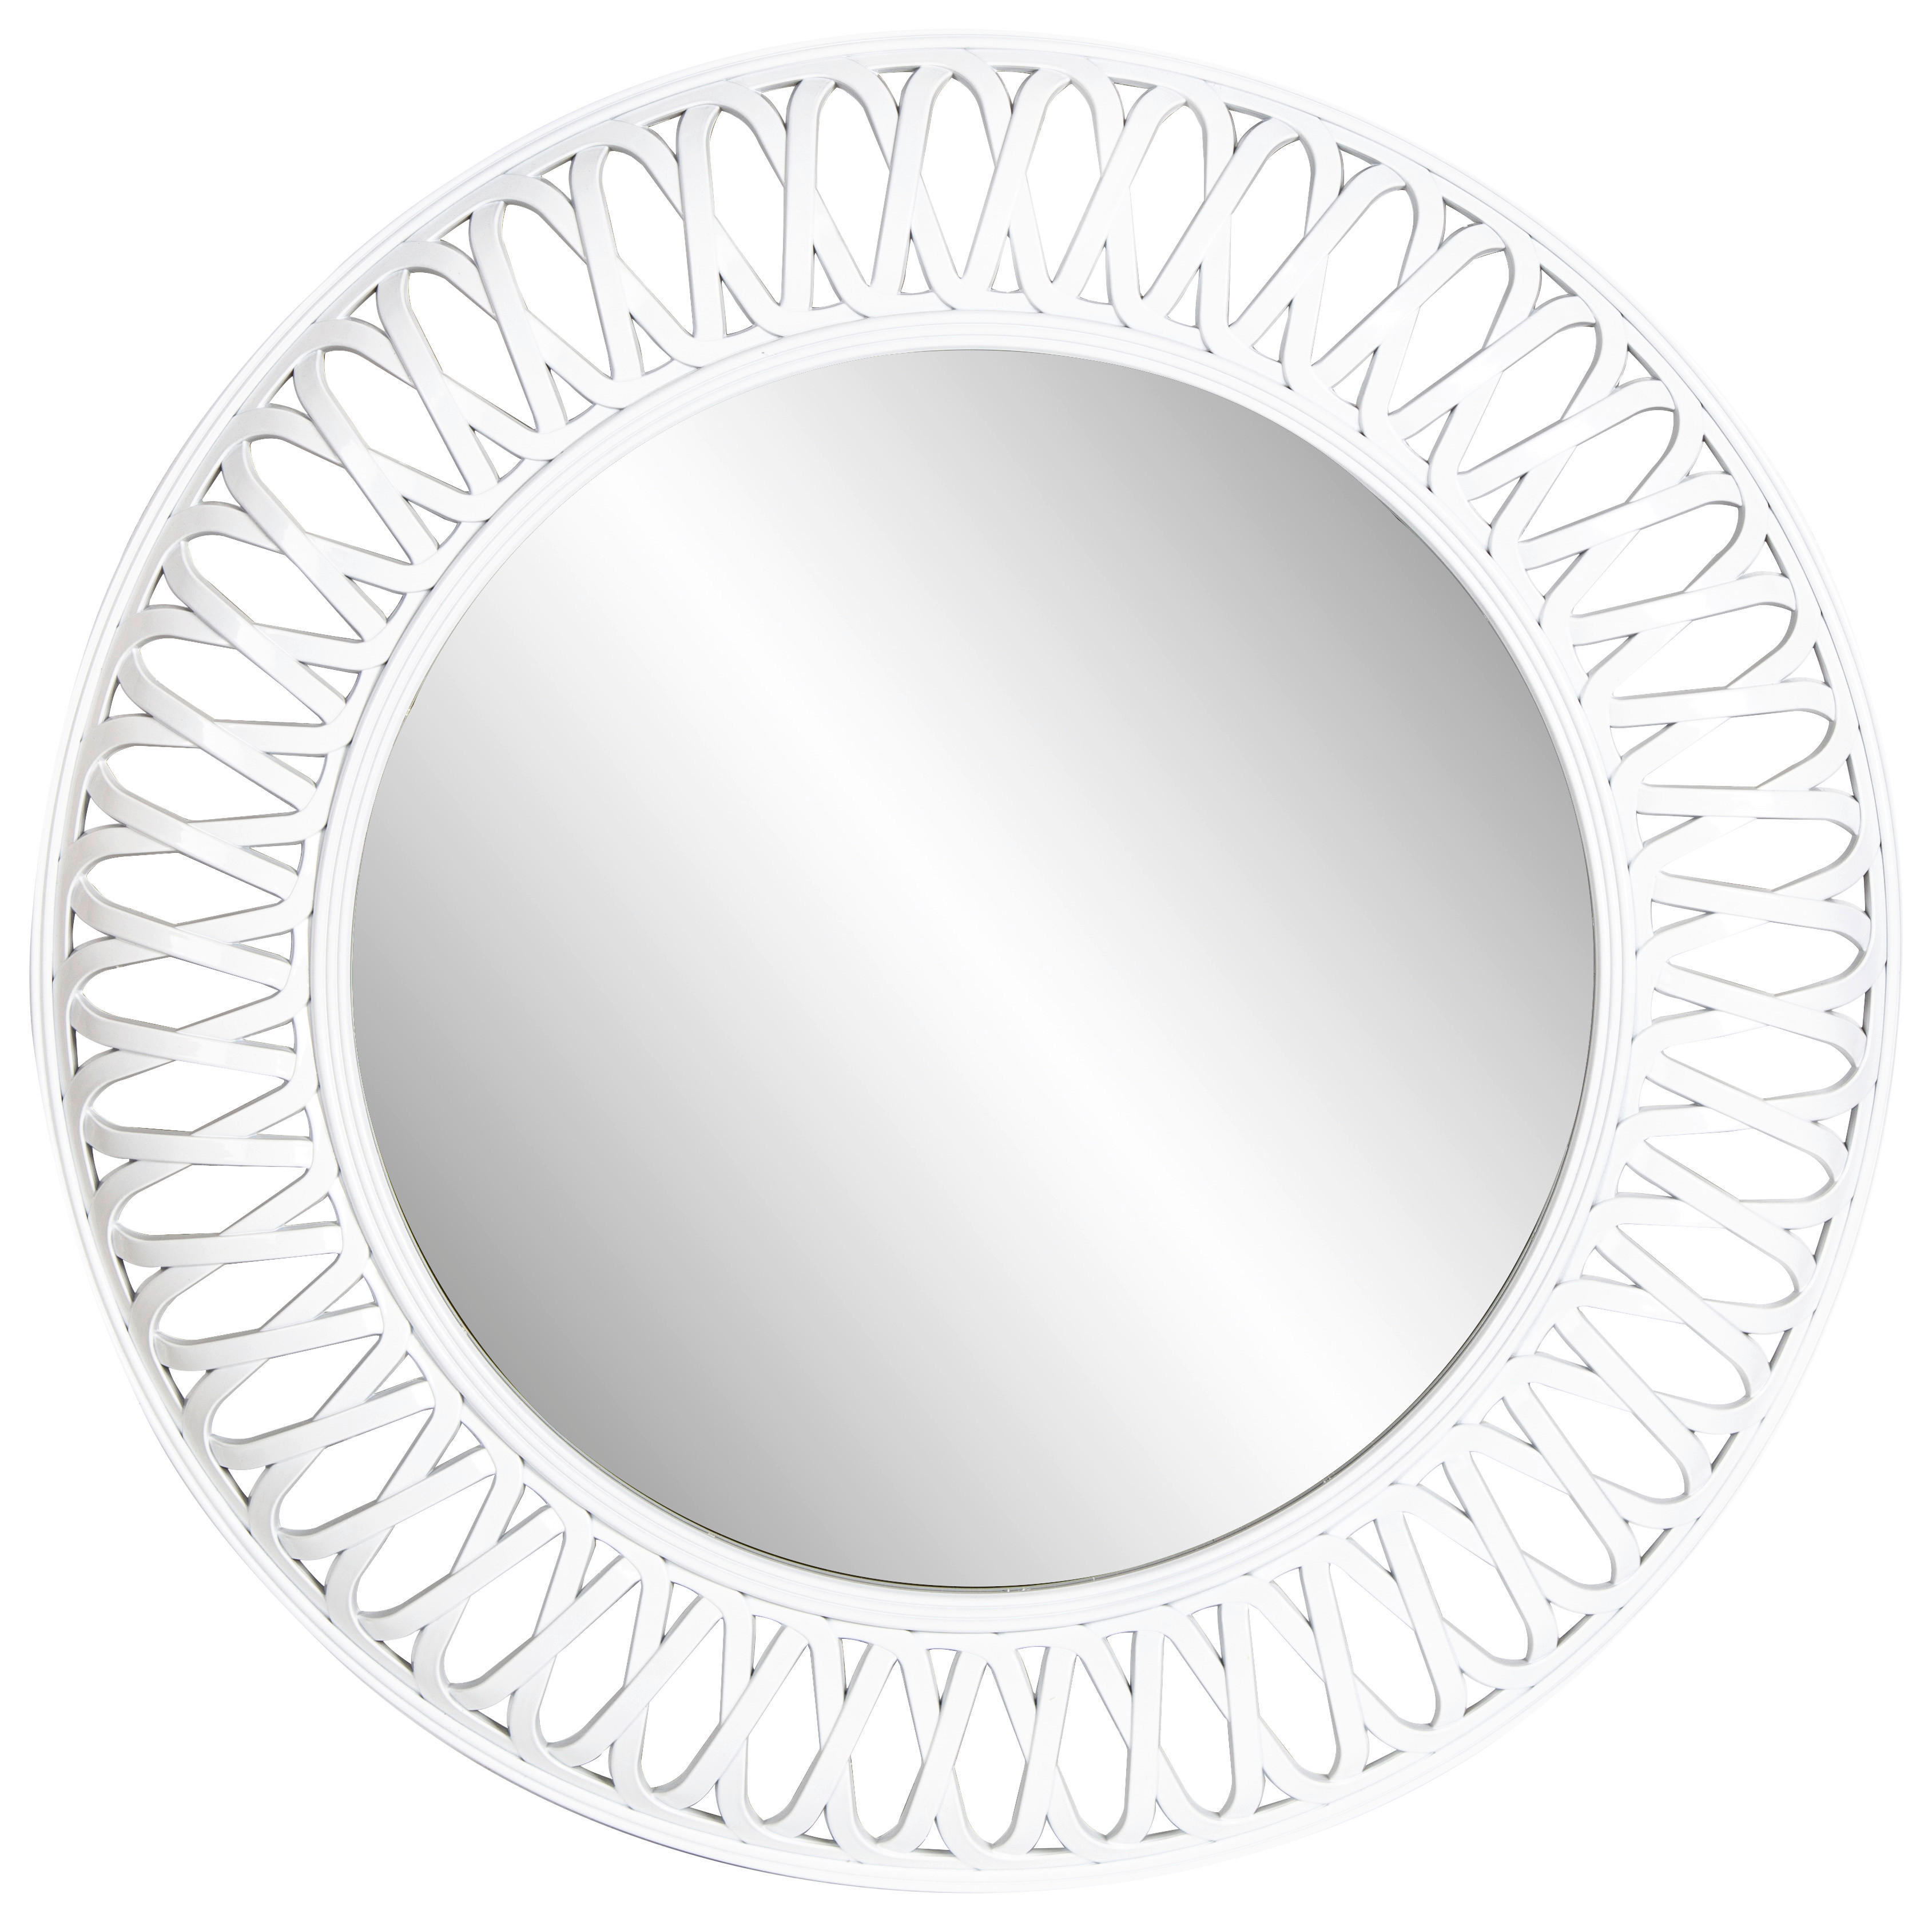 Rahmenspiegel Fabienne weiß glänzend Kunststoff D: ca. 76 cm Fabienne - weiß (76,00cm)